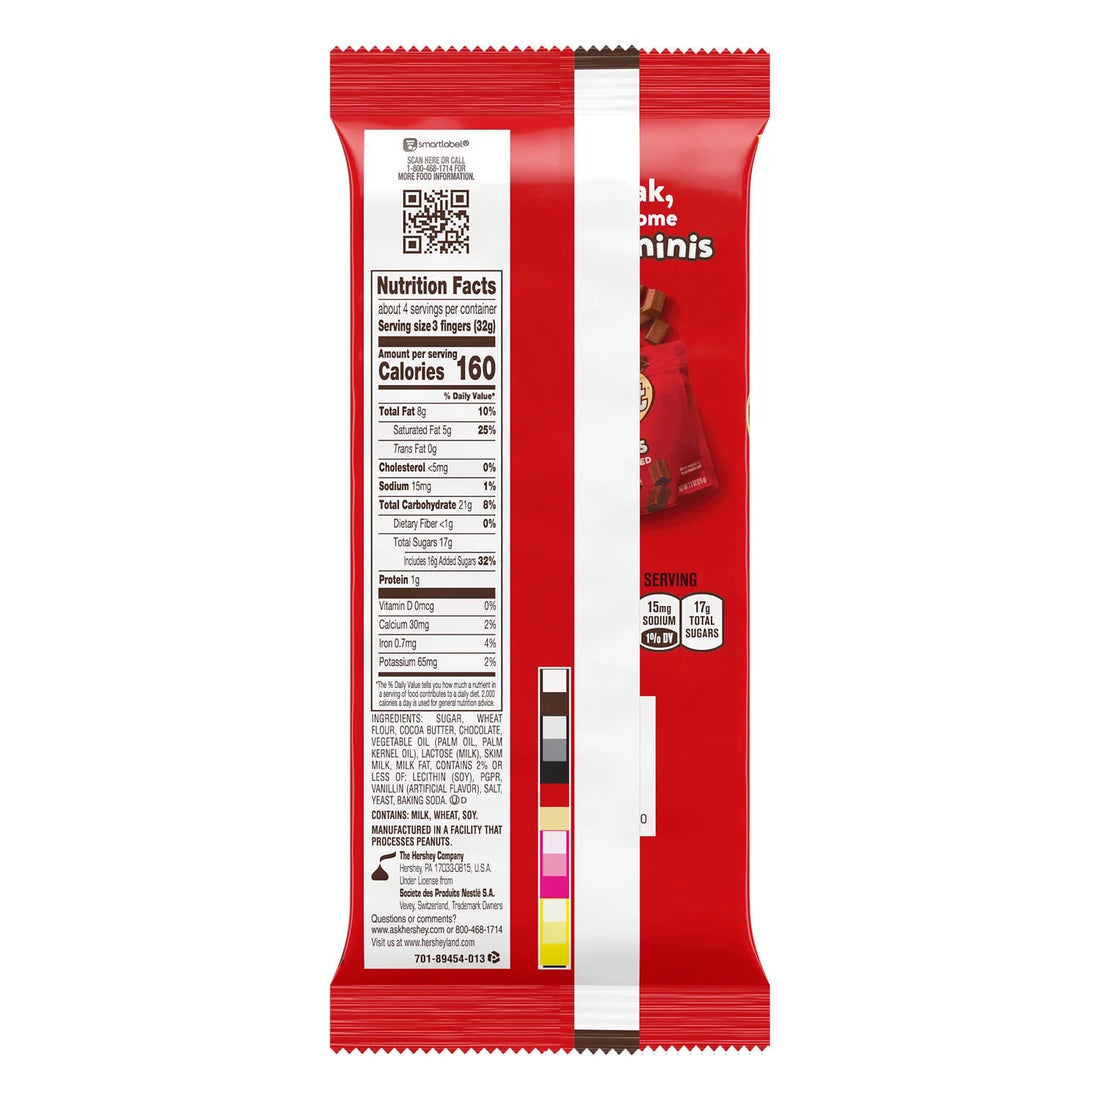 Kit Kat® Milk Chocolate Wafer XL Candy, Bar 4.5 oz, 12 Pieces